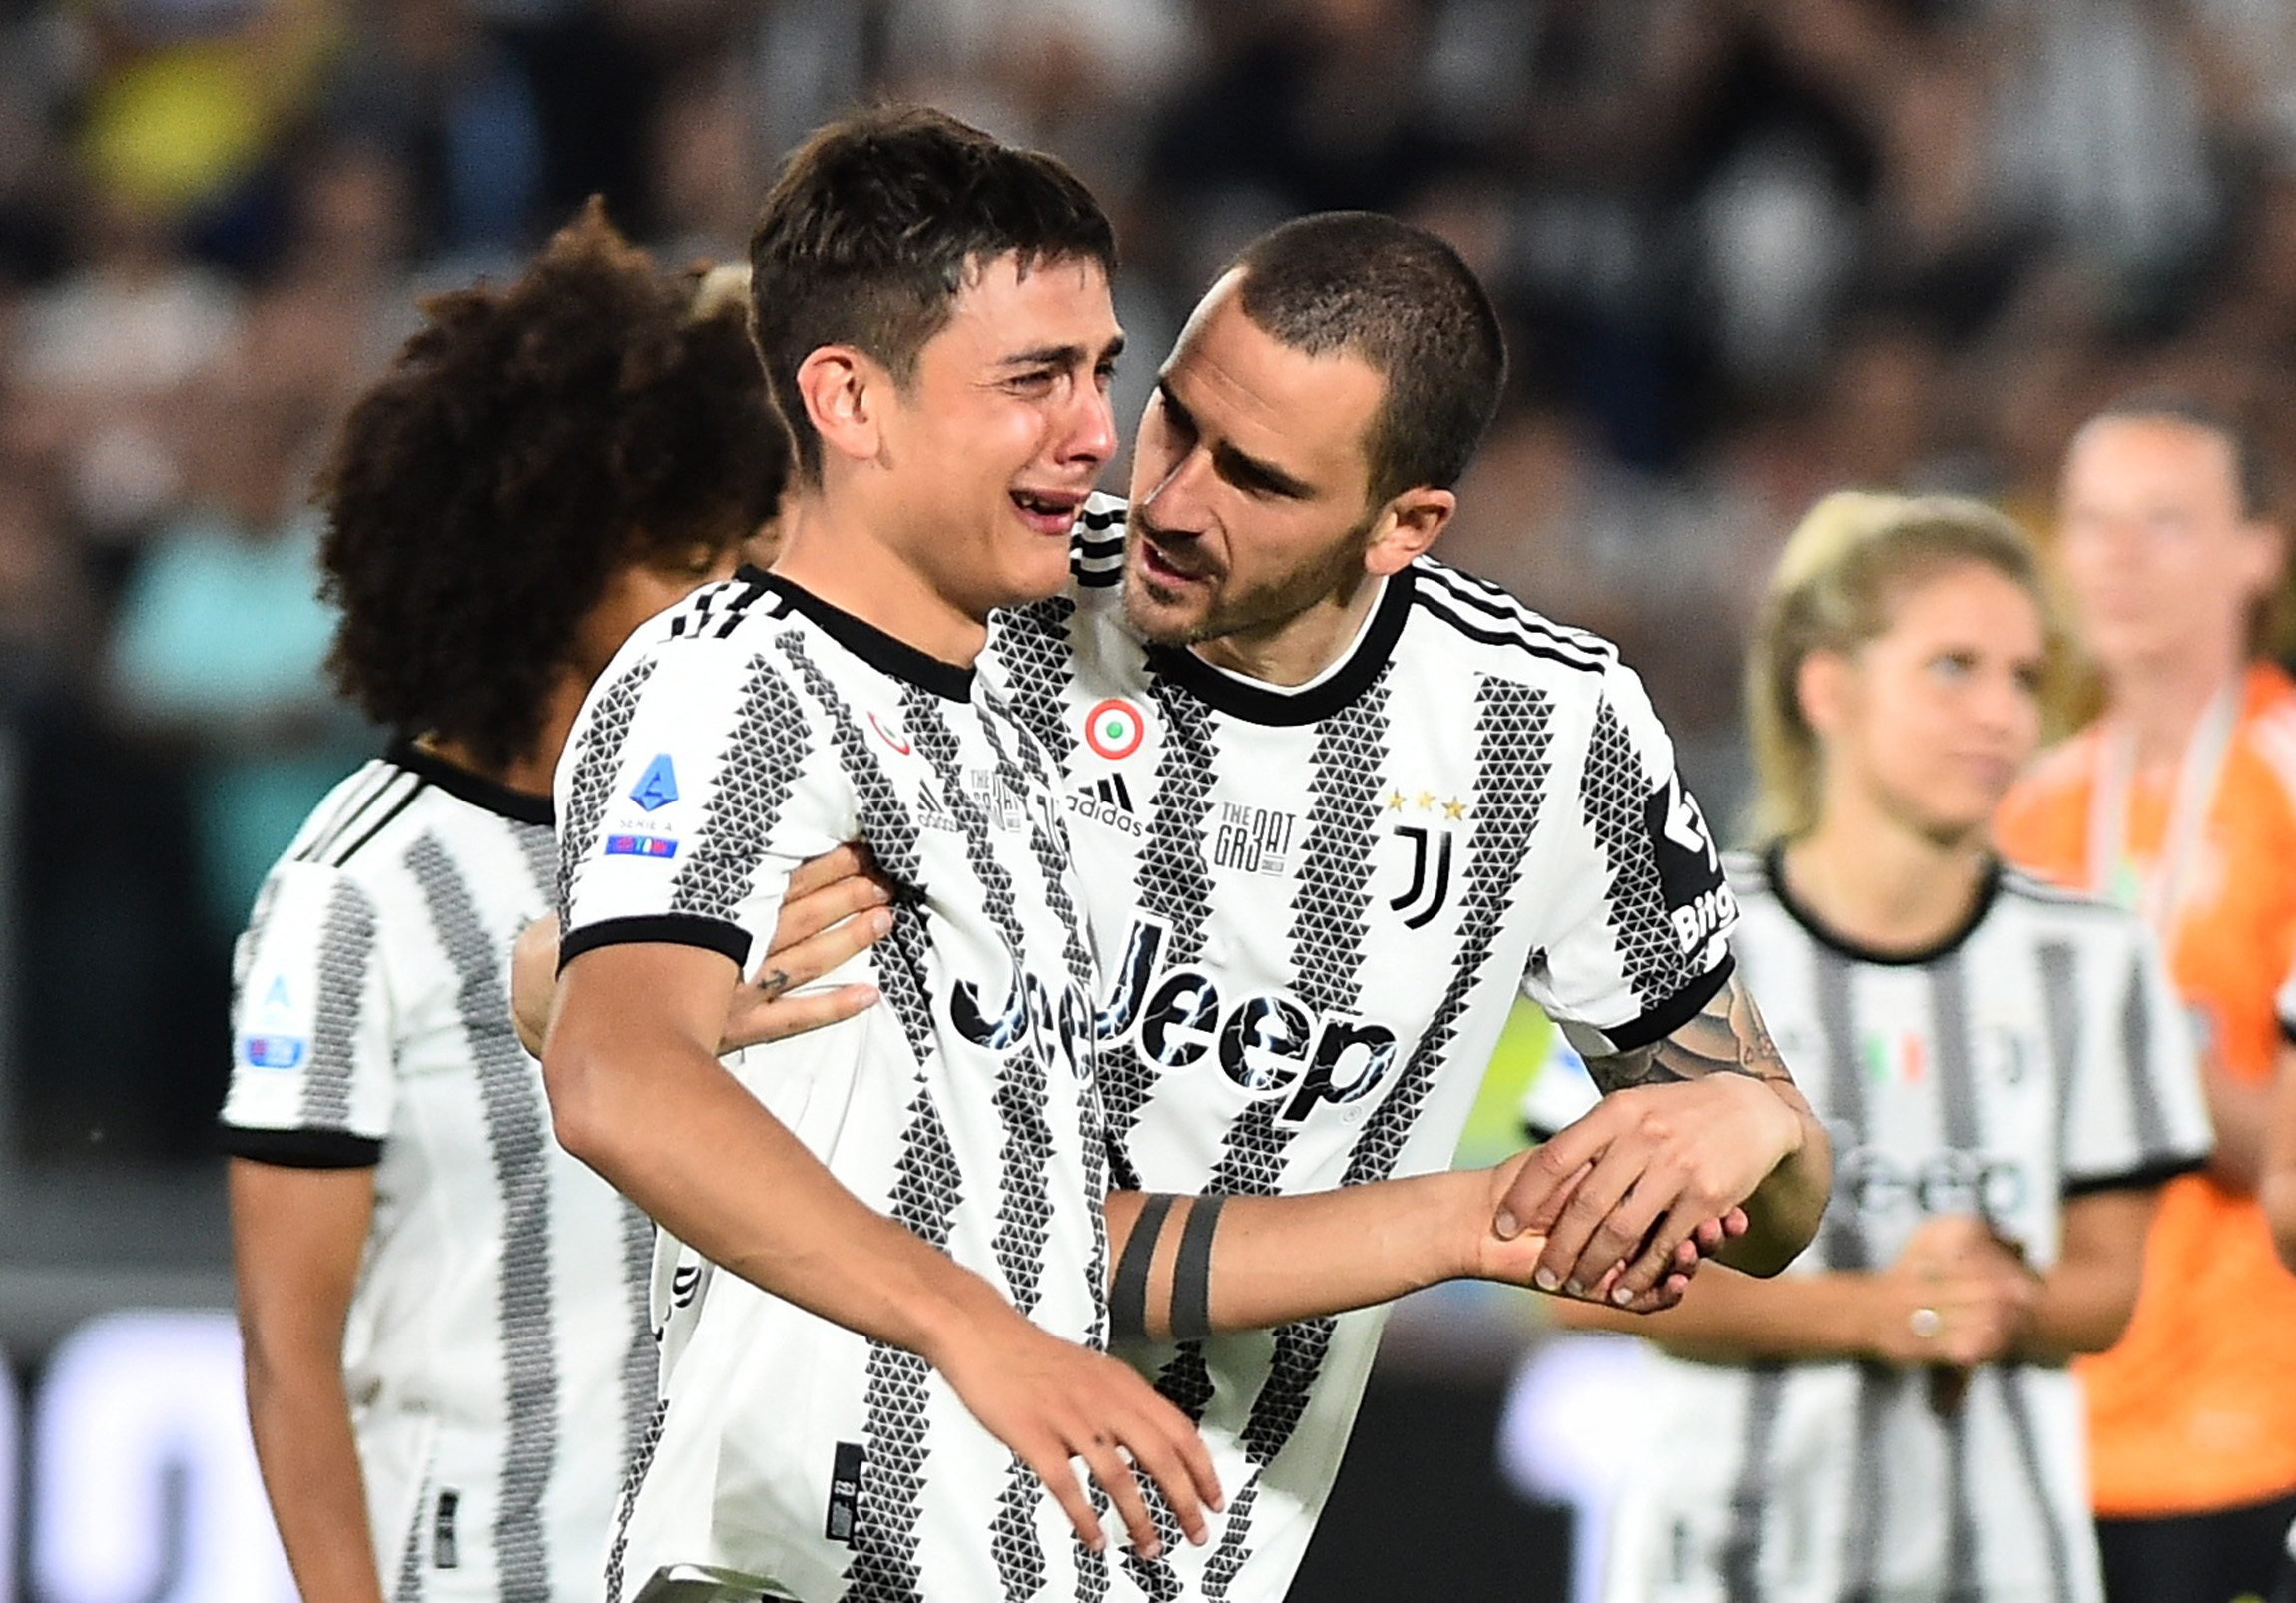 Lujo en uno de los goles, ovación, maratón de autógrafos en pleno partido y lágrimas: así fue la despedida de Dybala ante el público de la Juventus